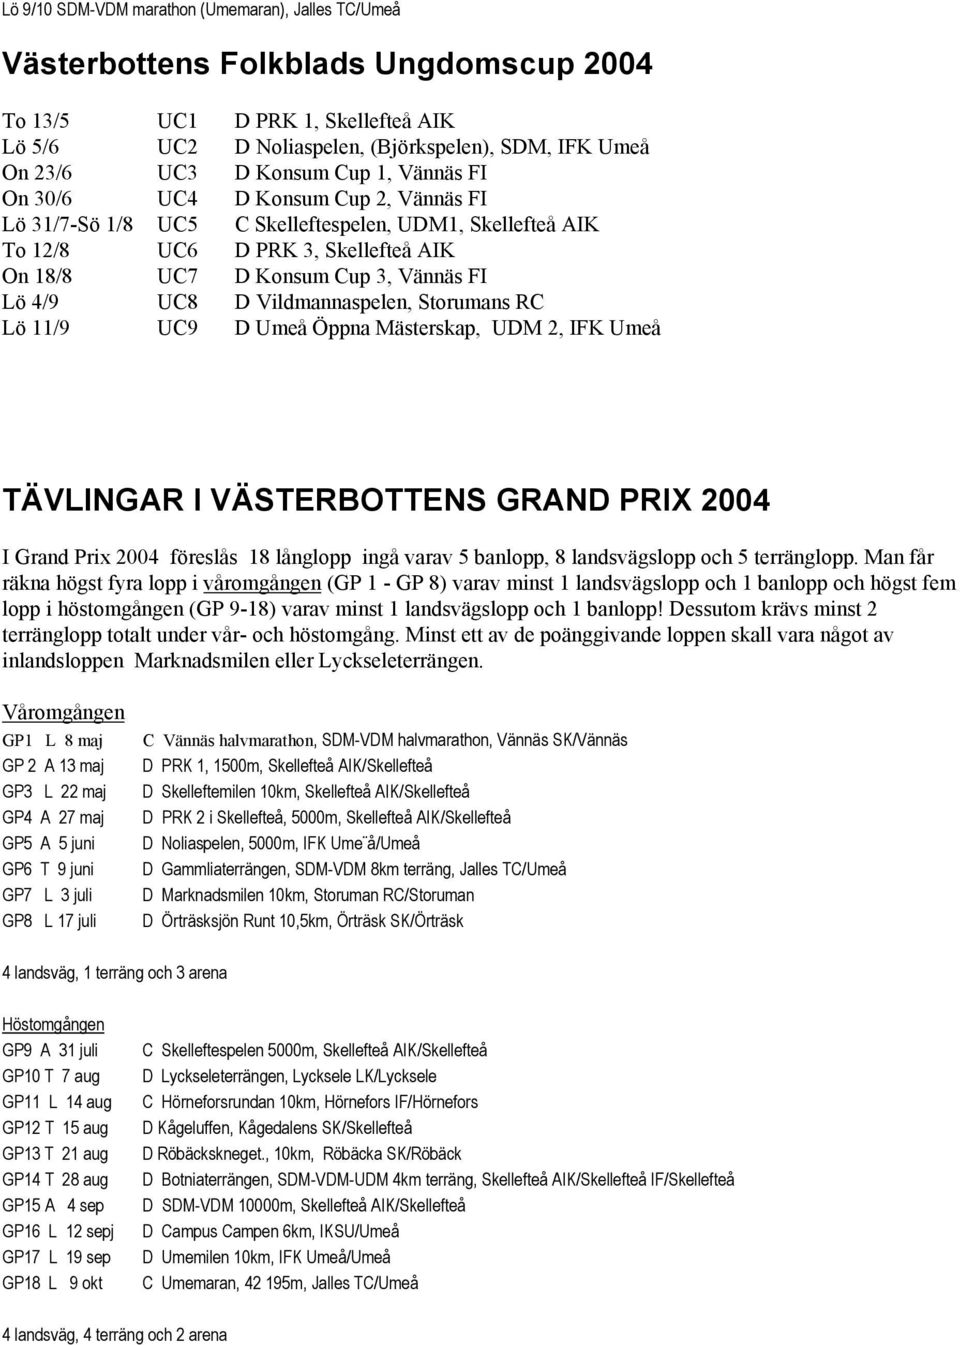 4/9 UC8 D Vildmannaspelen, Storumans RC Lö 11/9 UC9 D Umeå Öppna Mästerskap, UDM 2, IFK Umeå TÄVLINGAR I VÄSTERBOTTENS GRAND PRIX 2004 I Grand Prix 2004 föreslås 18 långlopp ingå varav 5 banlopp, 8